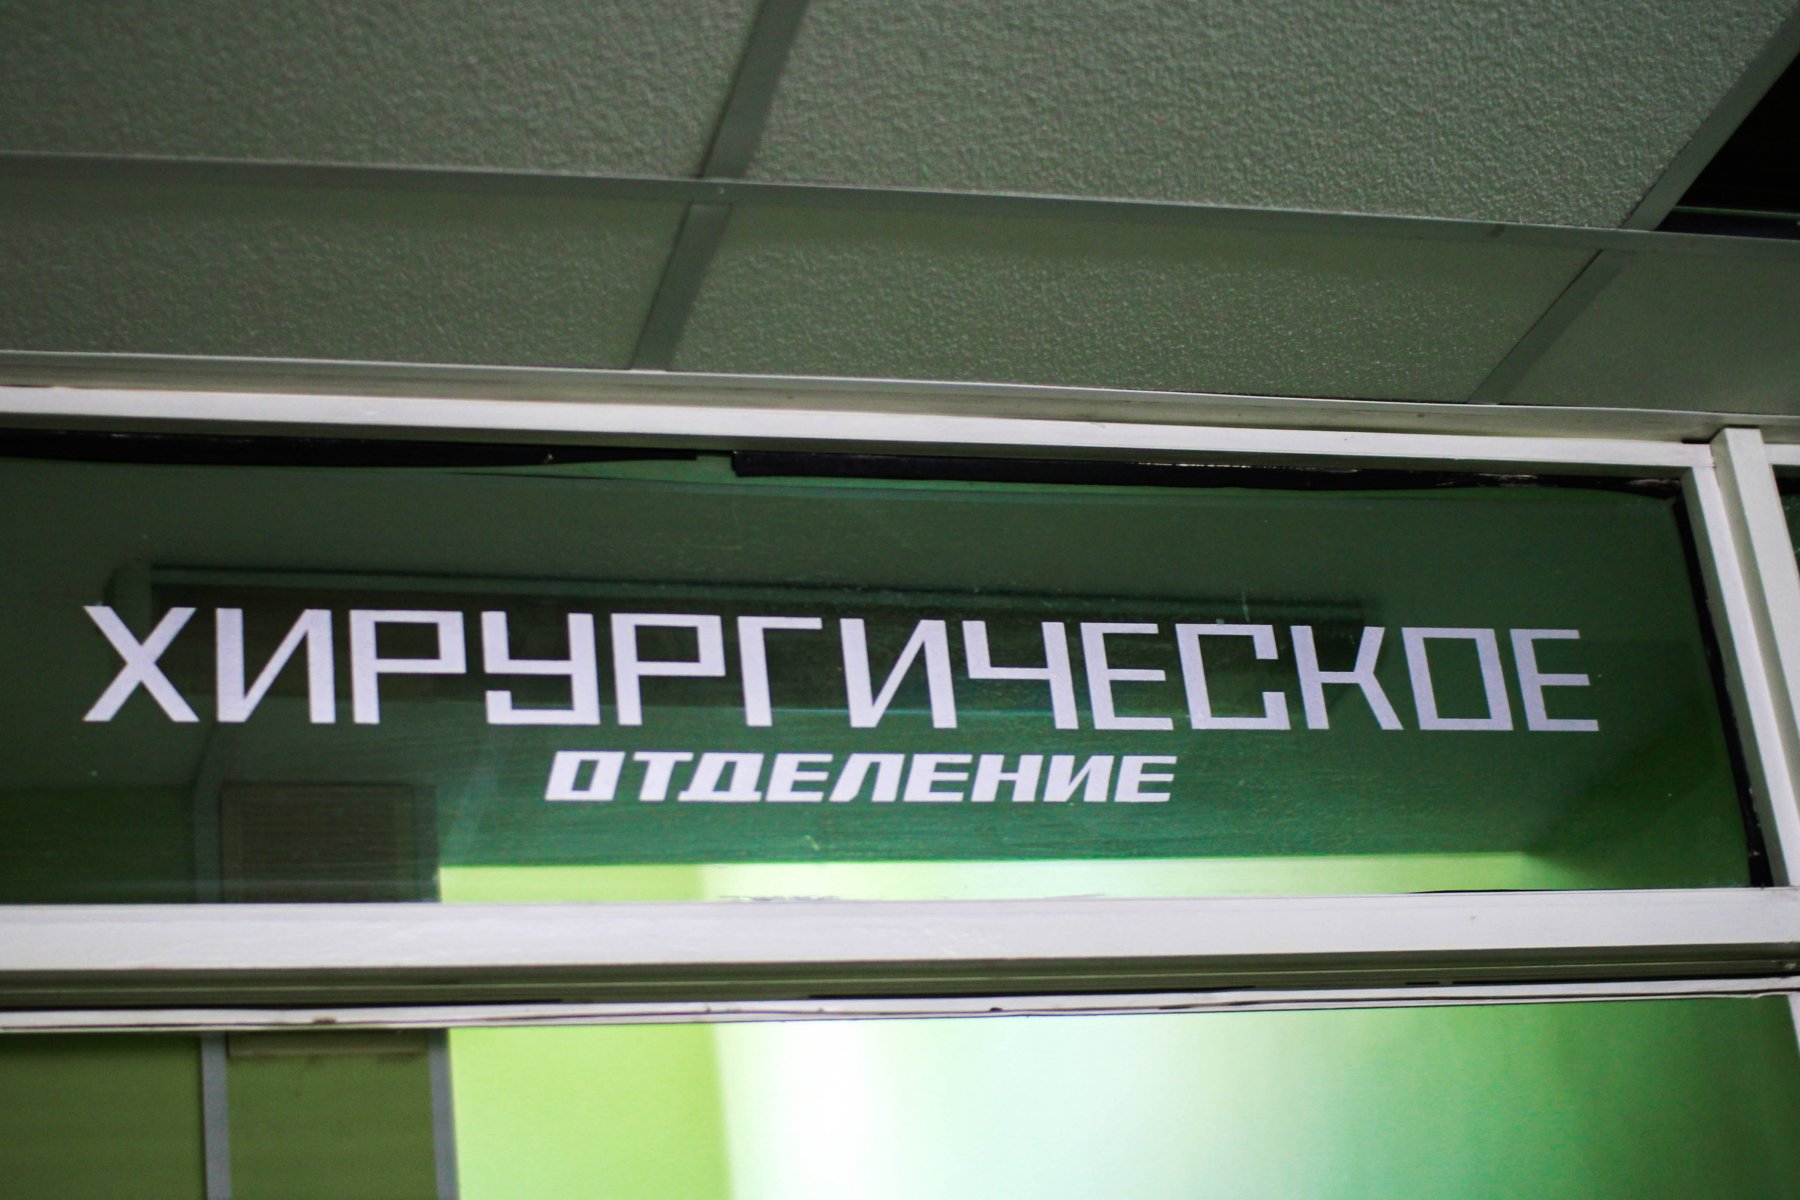  В Московском областном перинатальном центре открылось новое хирургическое отделение